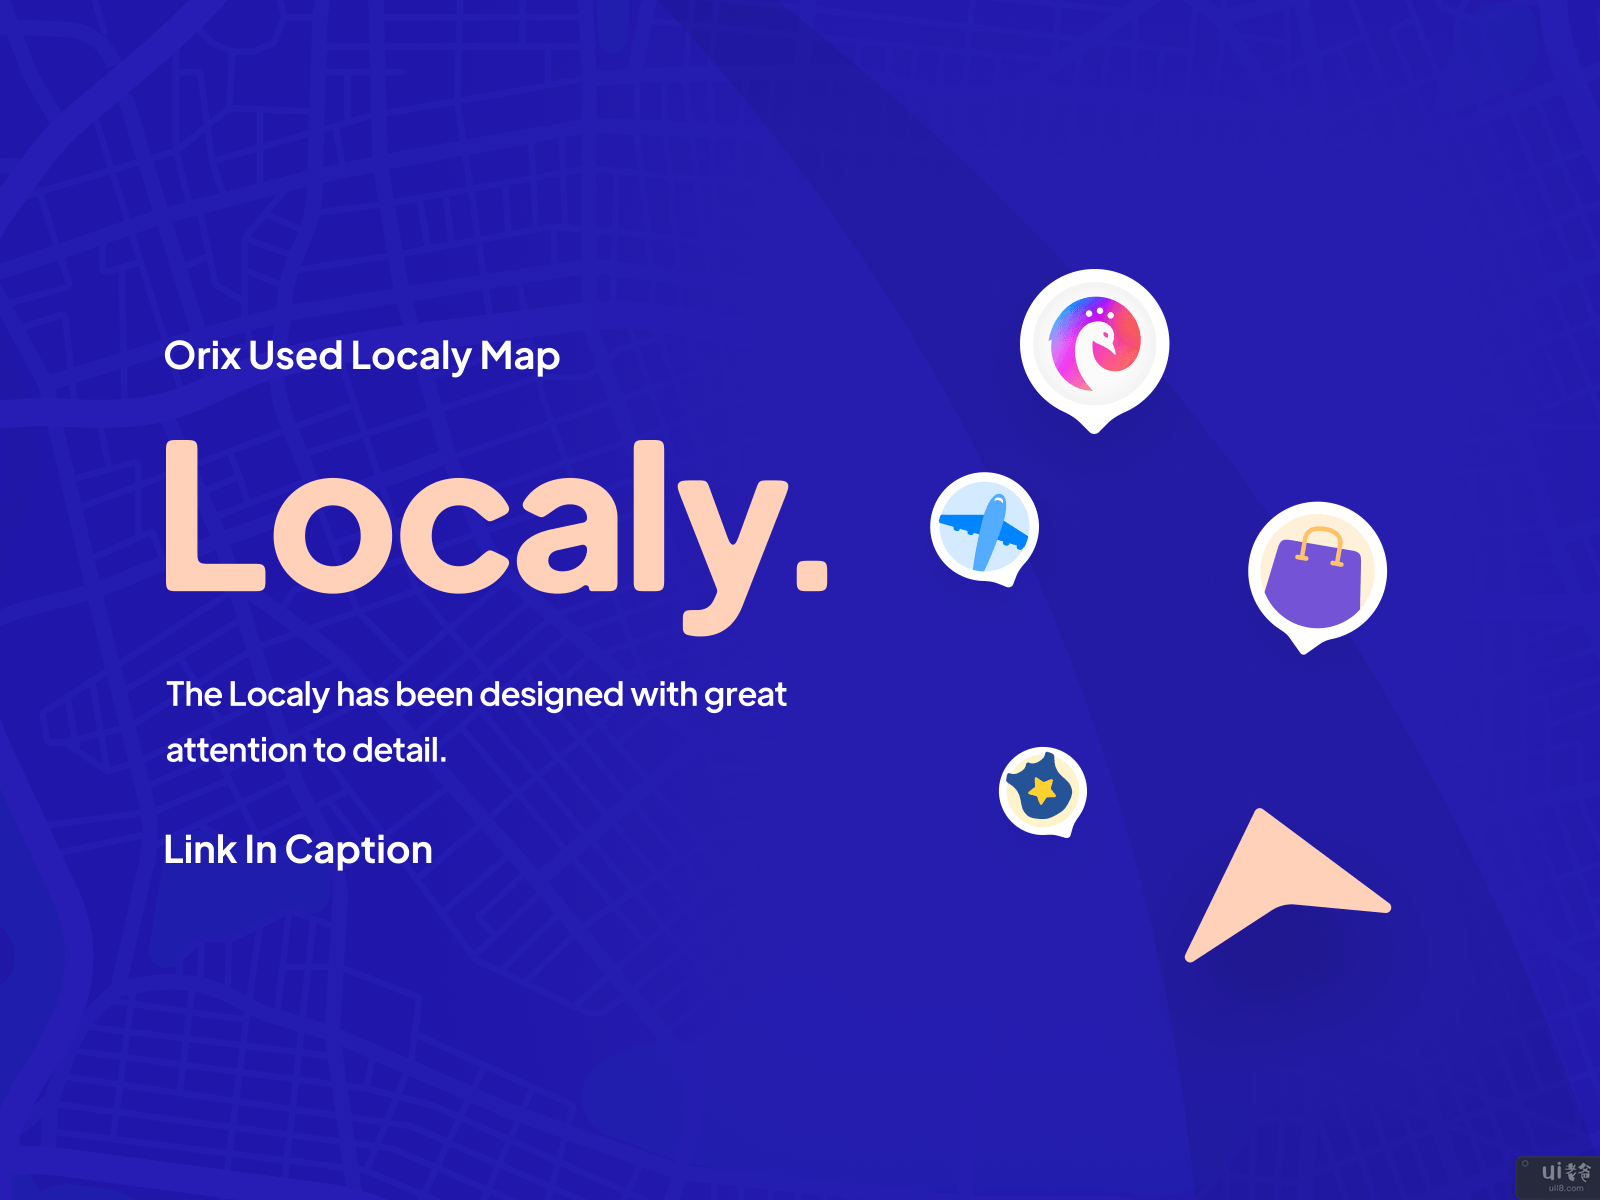 城市指南应用程序(City Guide App)插图1